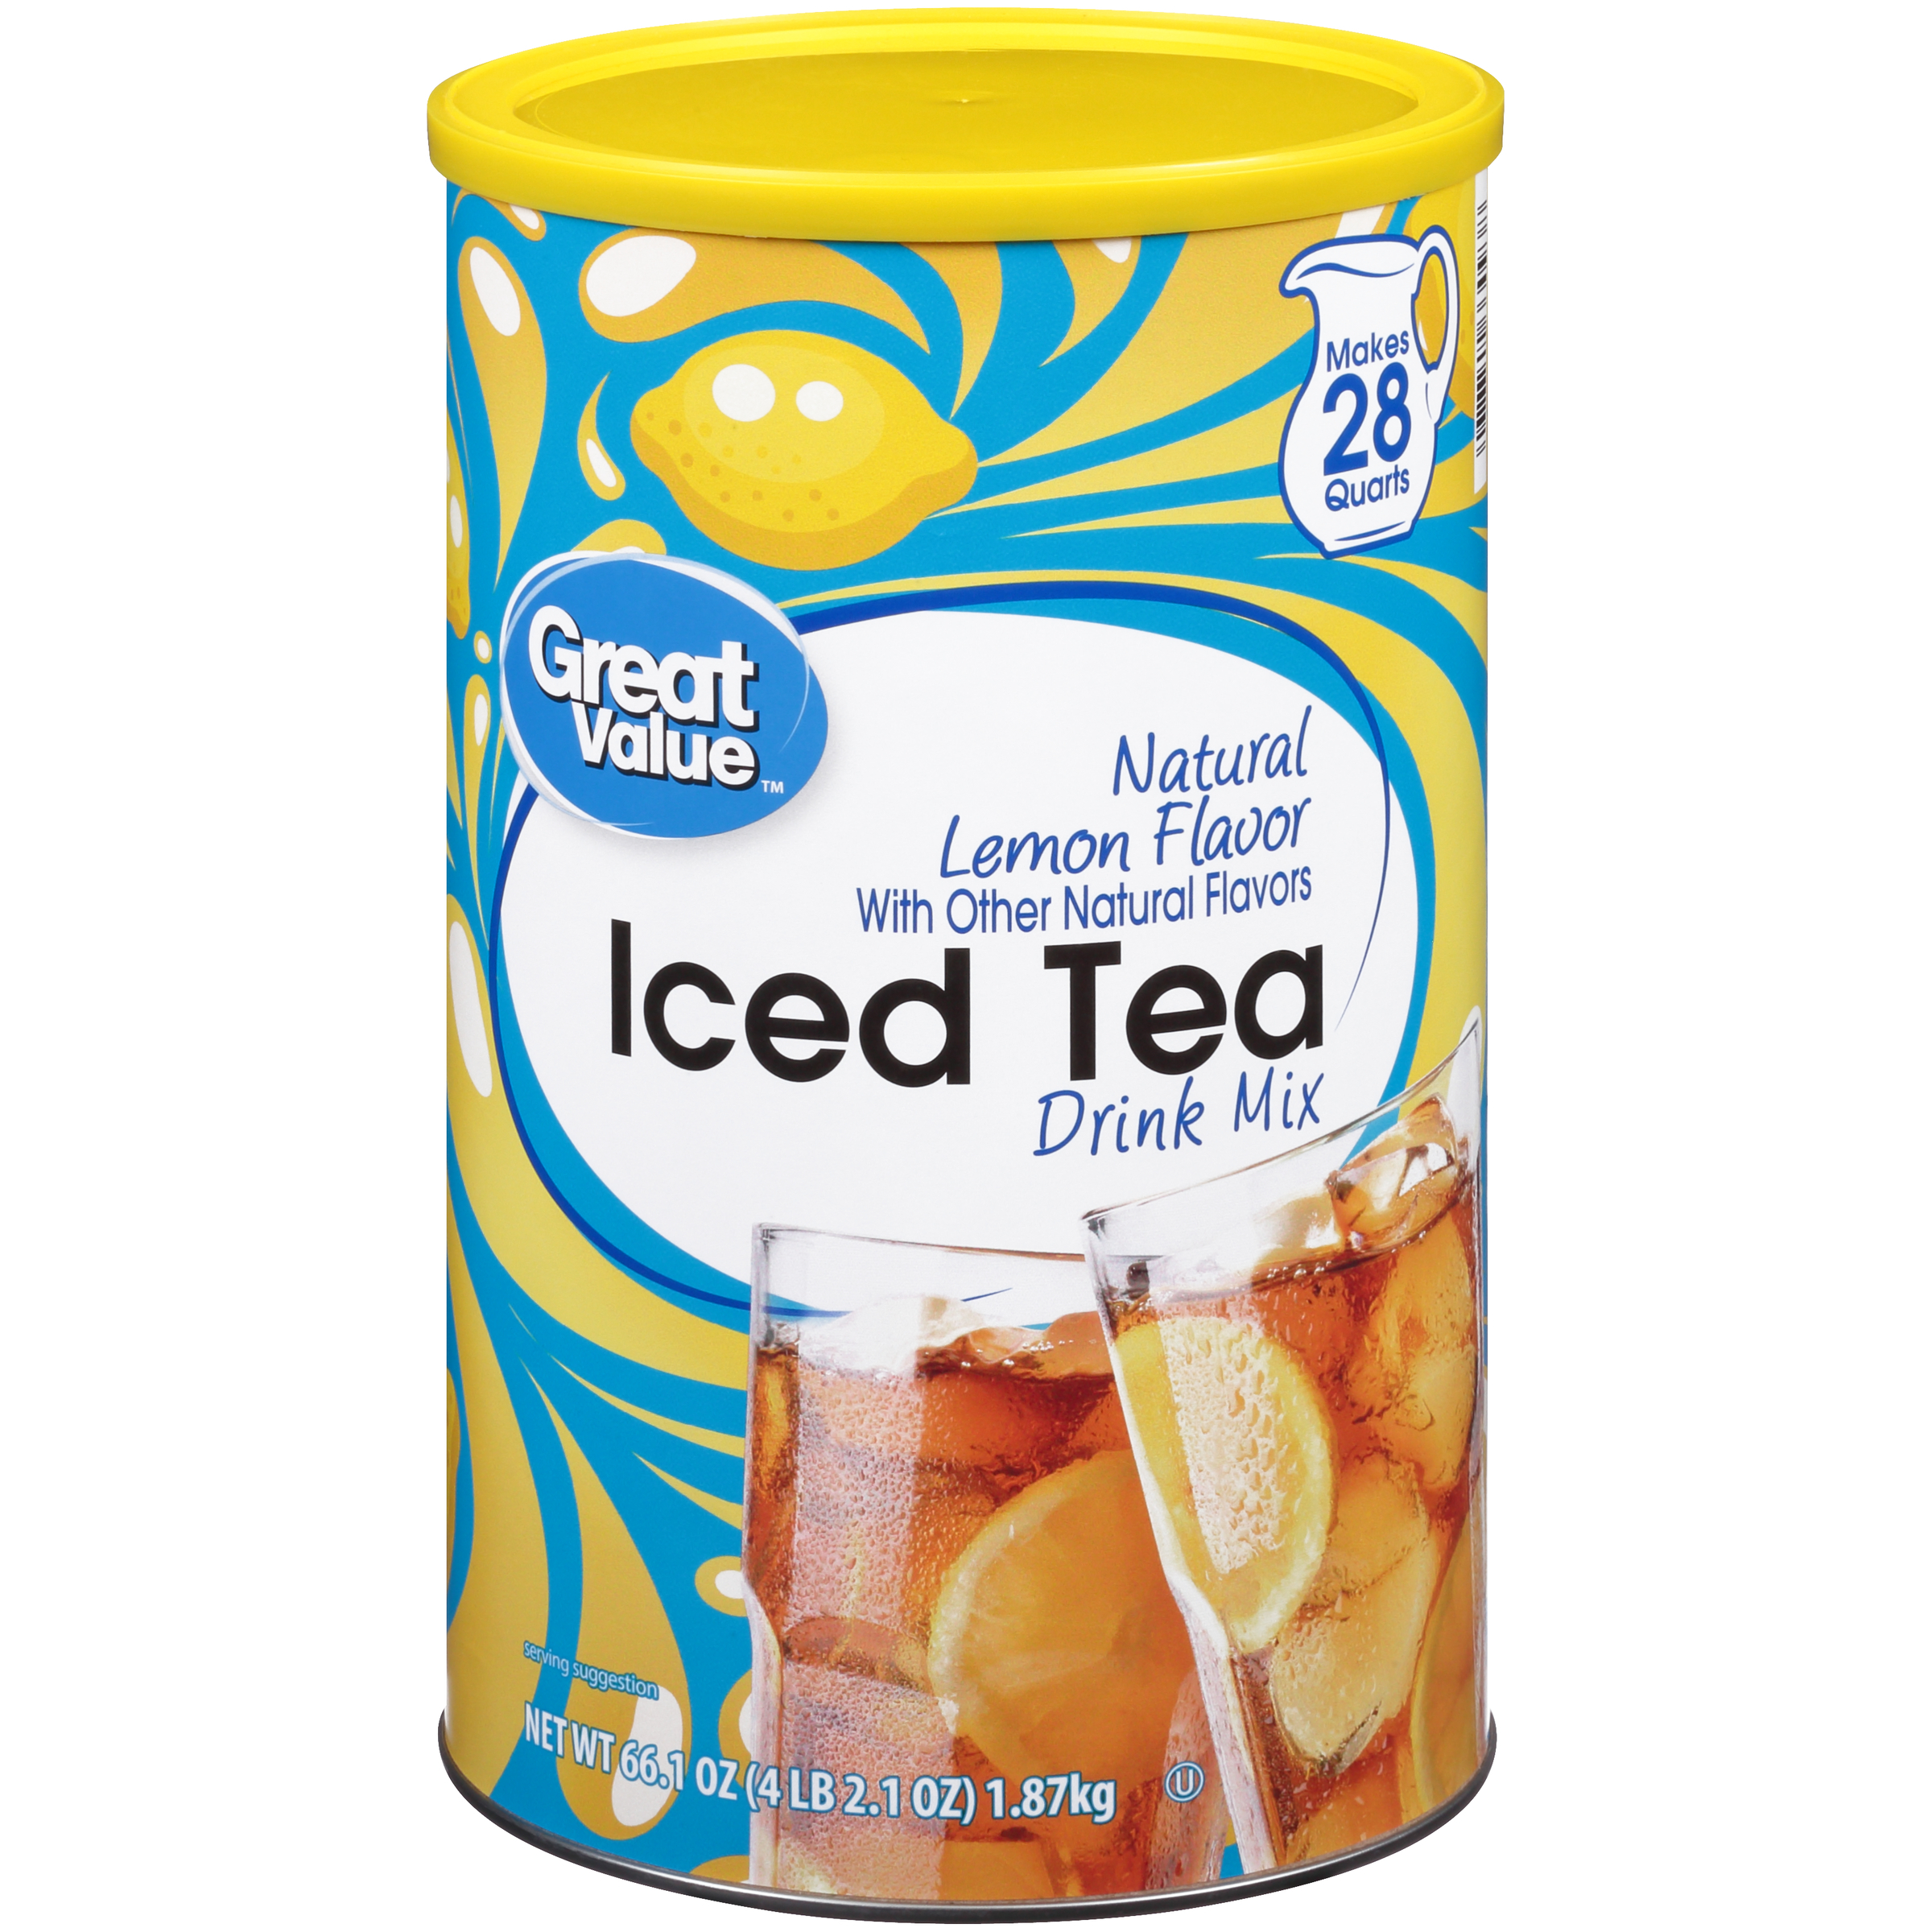 Great Value Natural Lemon Flavor Iced Tea Drink Mix, 66.1 oz - image 1 of 12